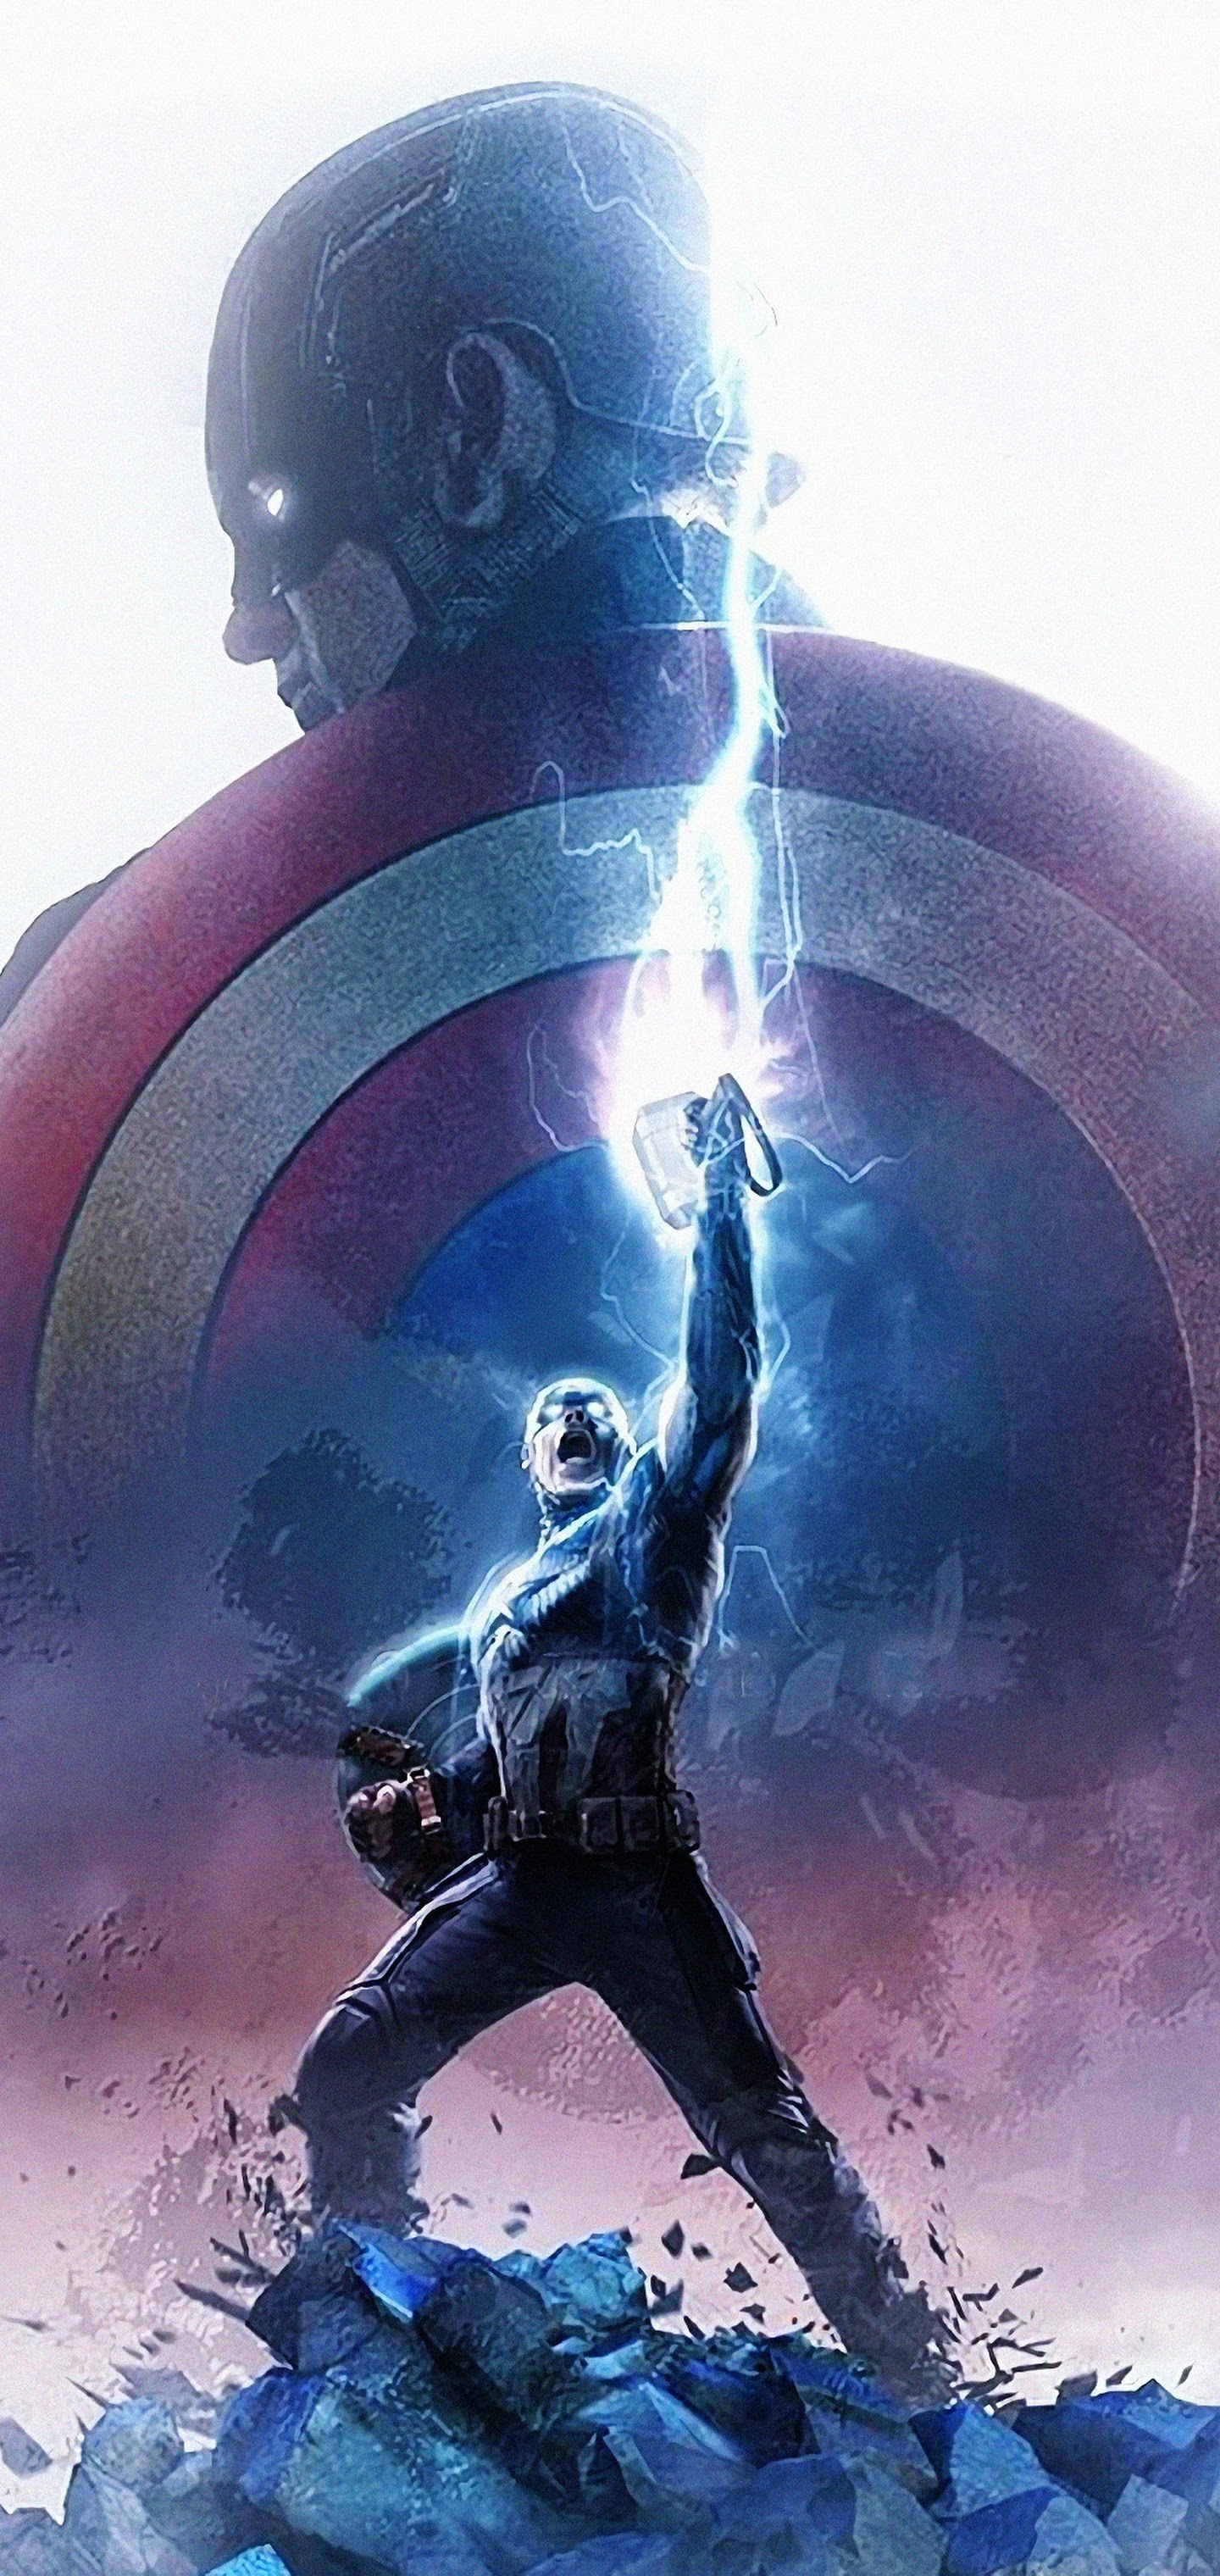 Endgame, Captain America, Thor Hammer, Lightning, 4k, - Captain America  With Hammer Endgame - 1440x3040 Wallpaper 